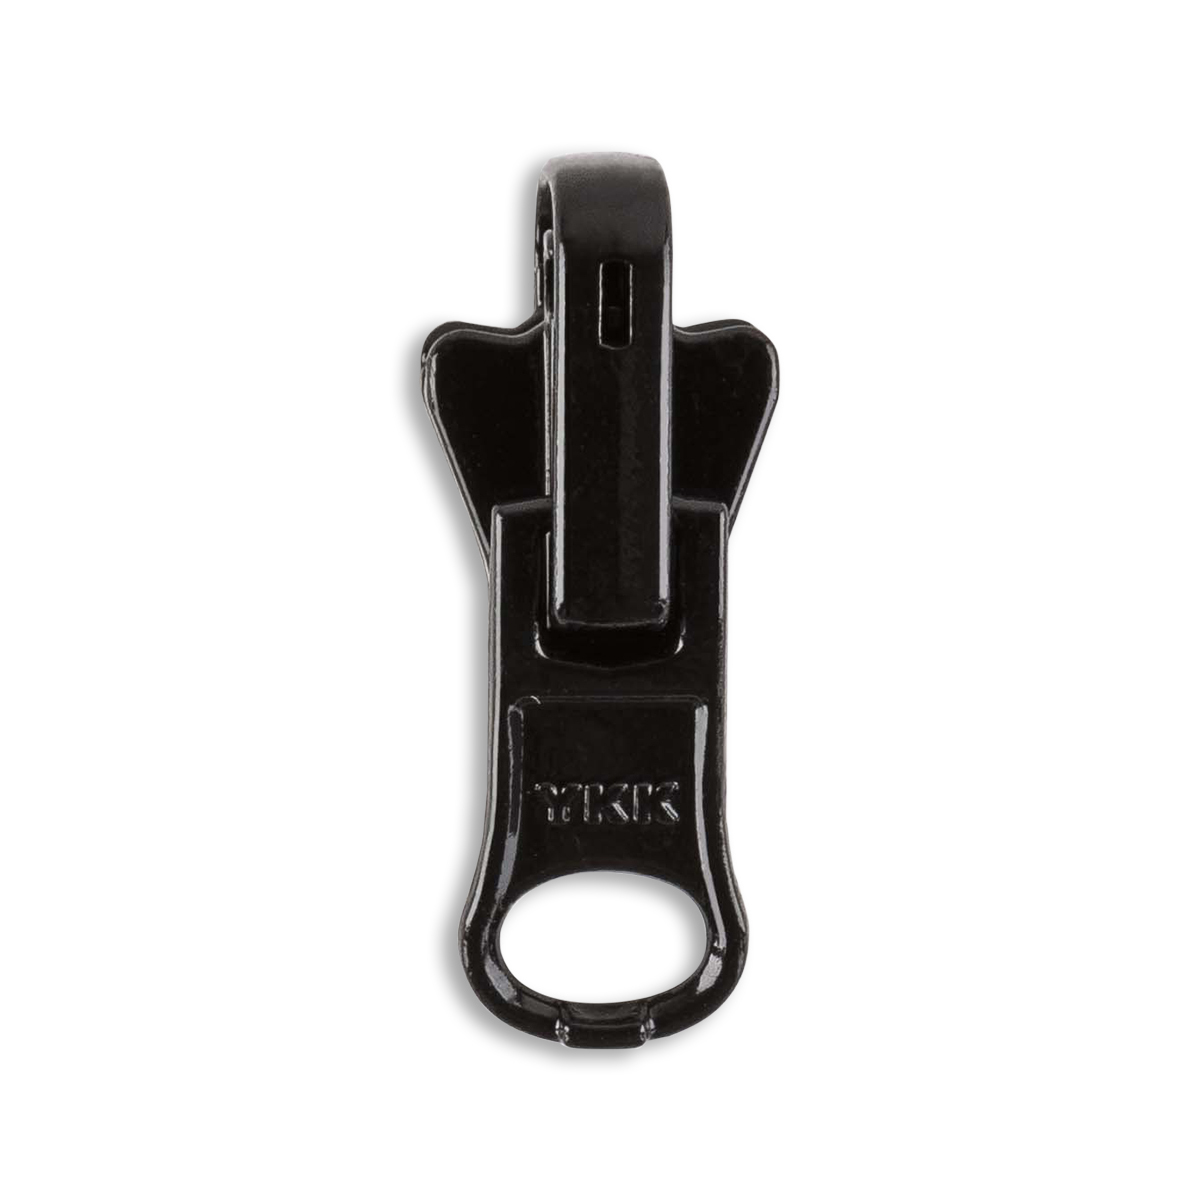 Zipper Repair Kit - #5 YKK Vislon Plastic Reversible Sliders - 3 Pulls Per  Pack - Made in The United States